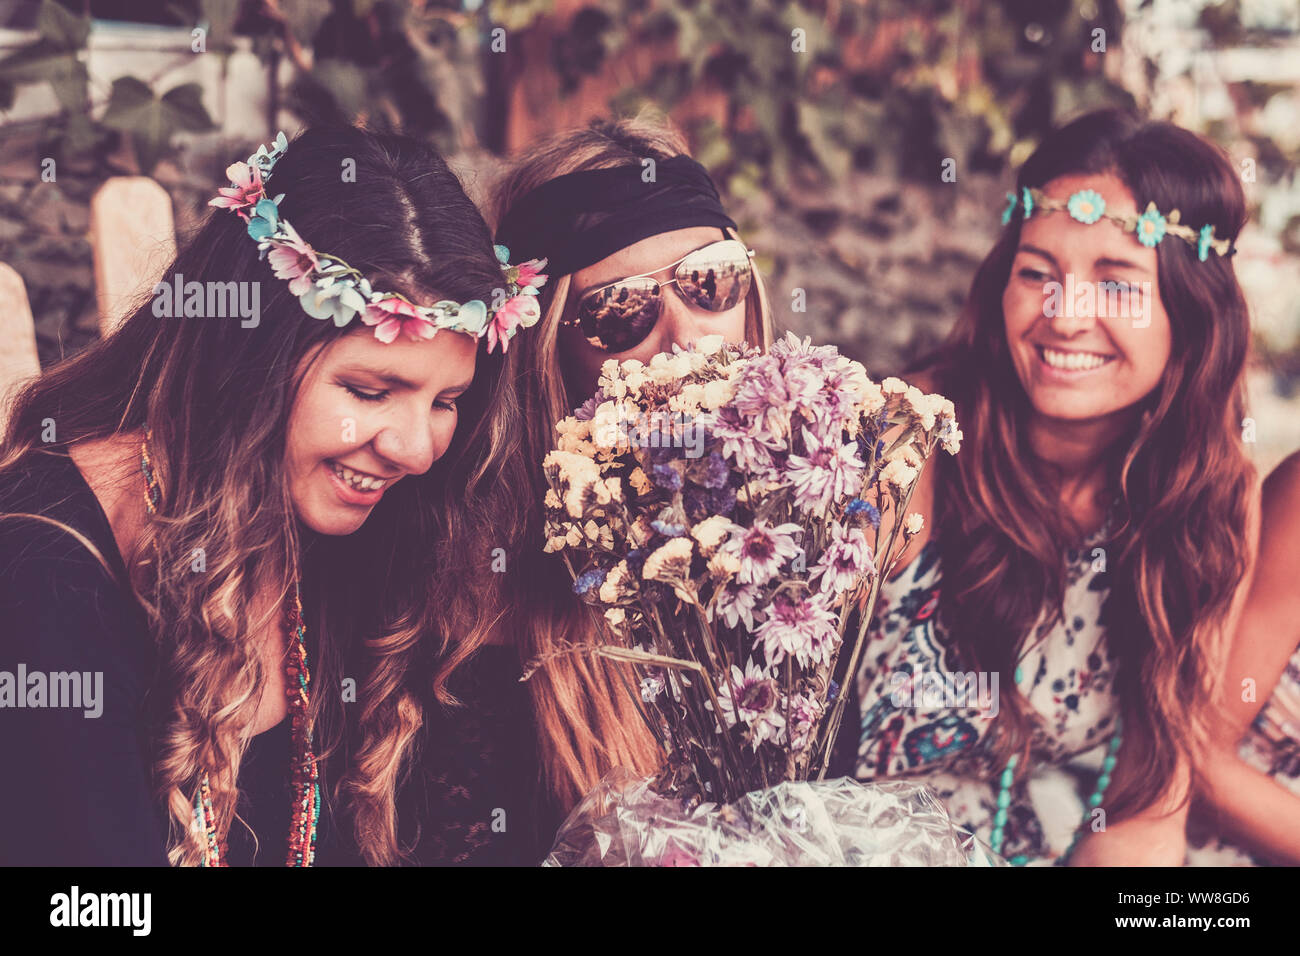 Giovani donne e ragazze in amicizia tutti insieme per celebrare e divertirsi in un bio luogo naturale, sorrisi e ridere per gruppo di hippies persone concetto alternativo stile di vita Foto Stock